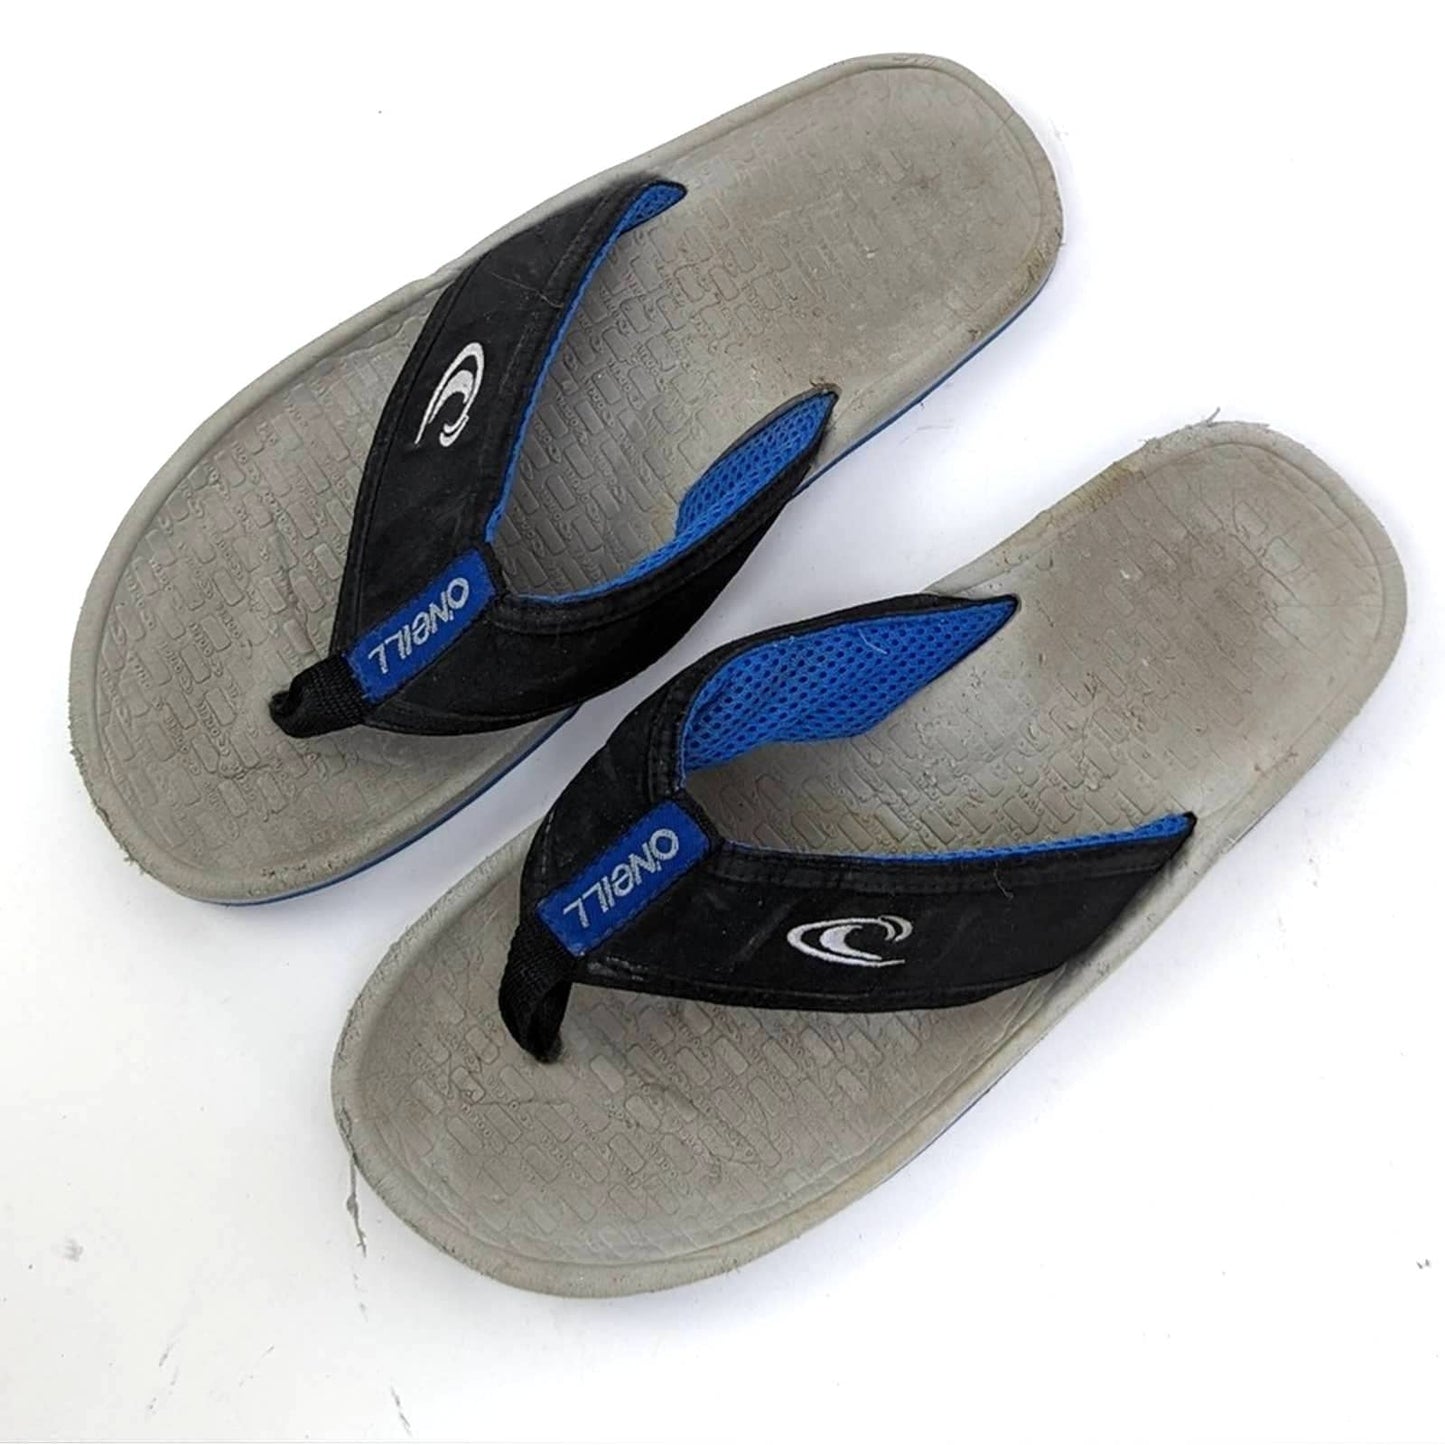 O’Neill Imprint Flip Flop Sandals - 9